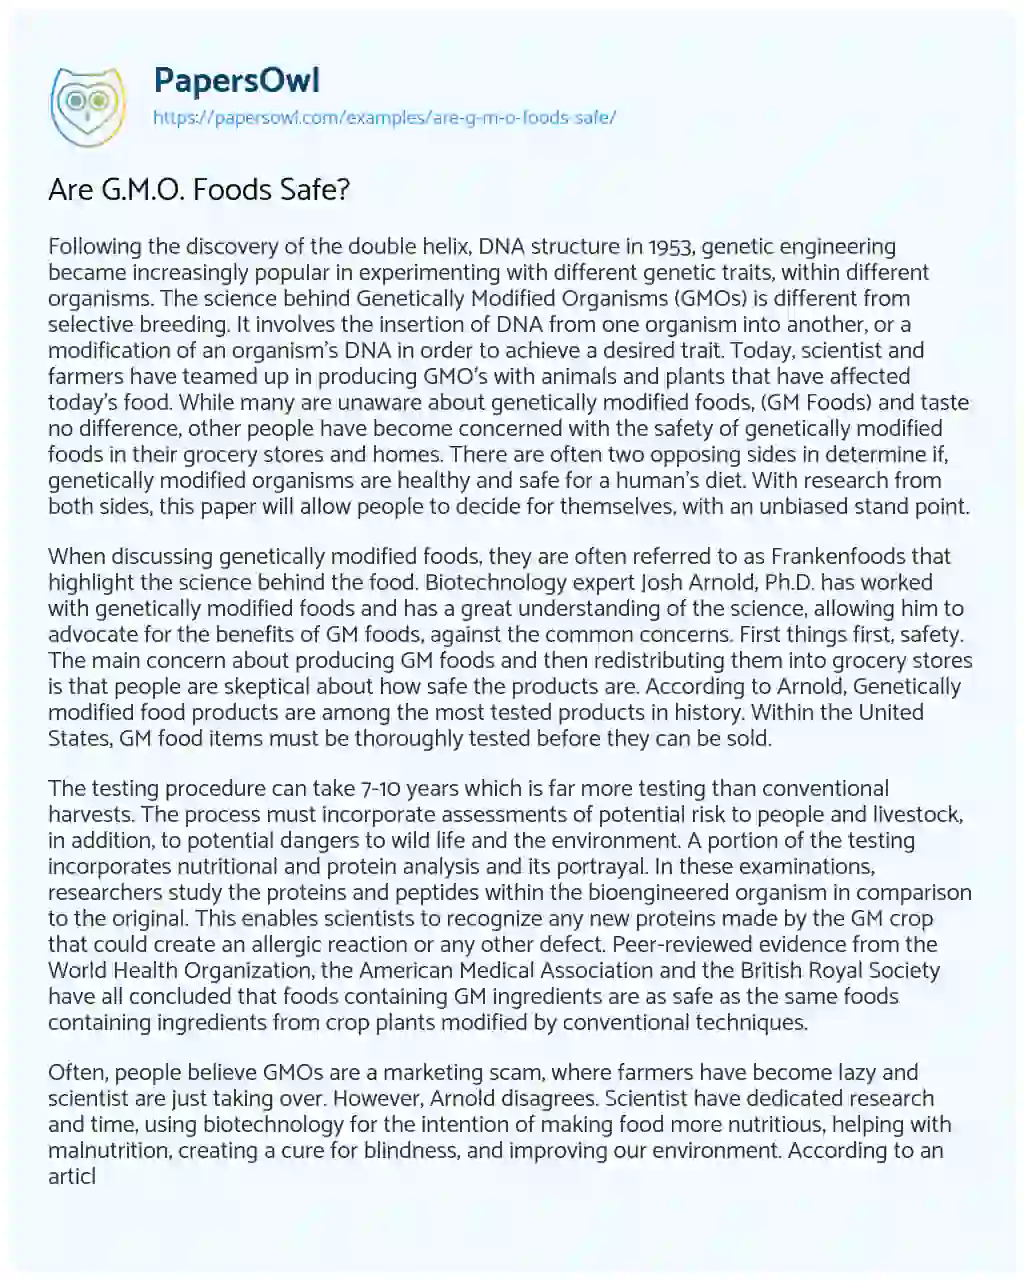 Are G.M.O. Foods Safe? essay